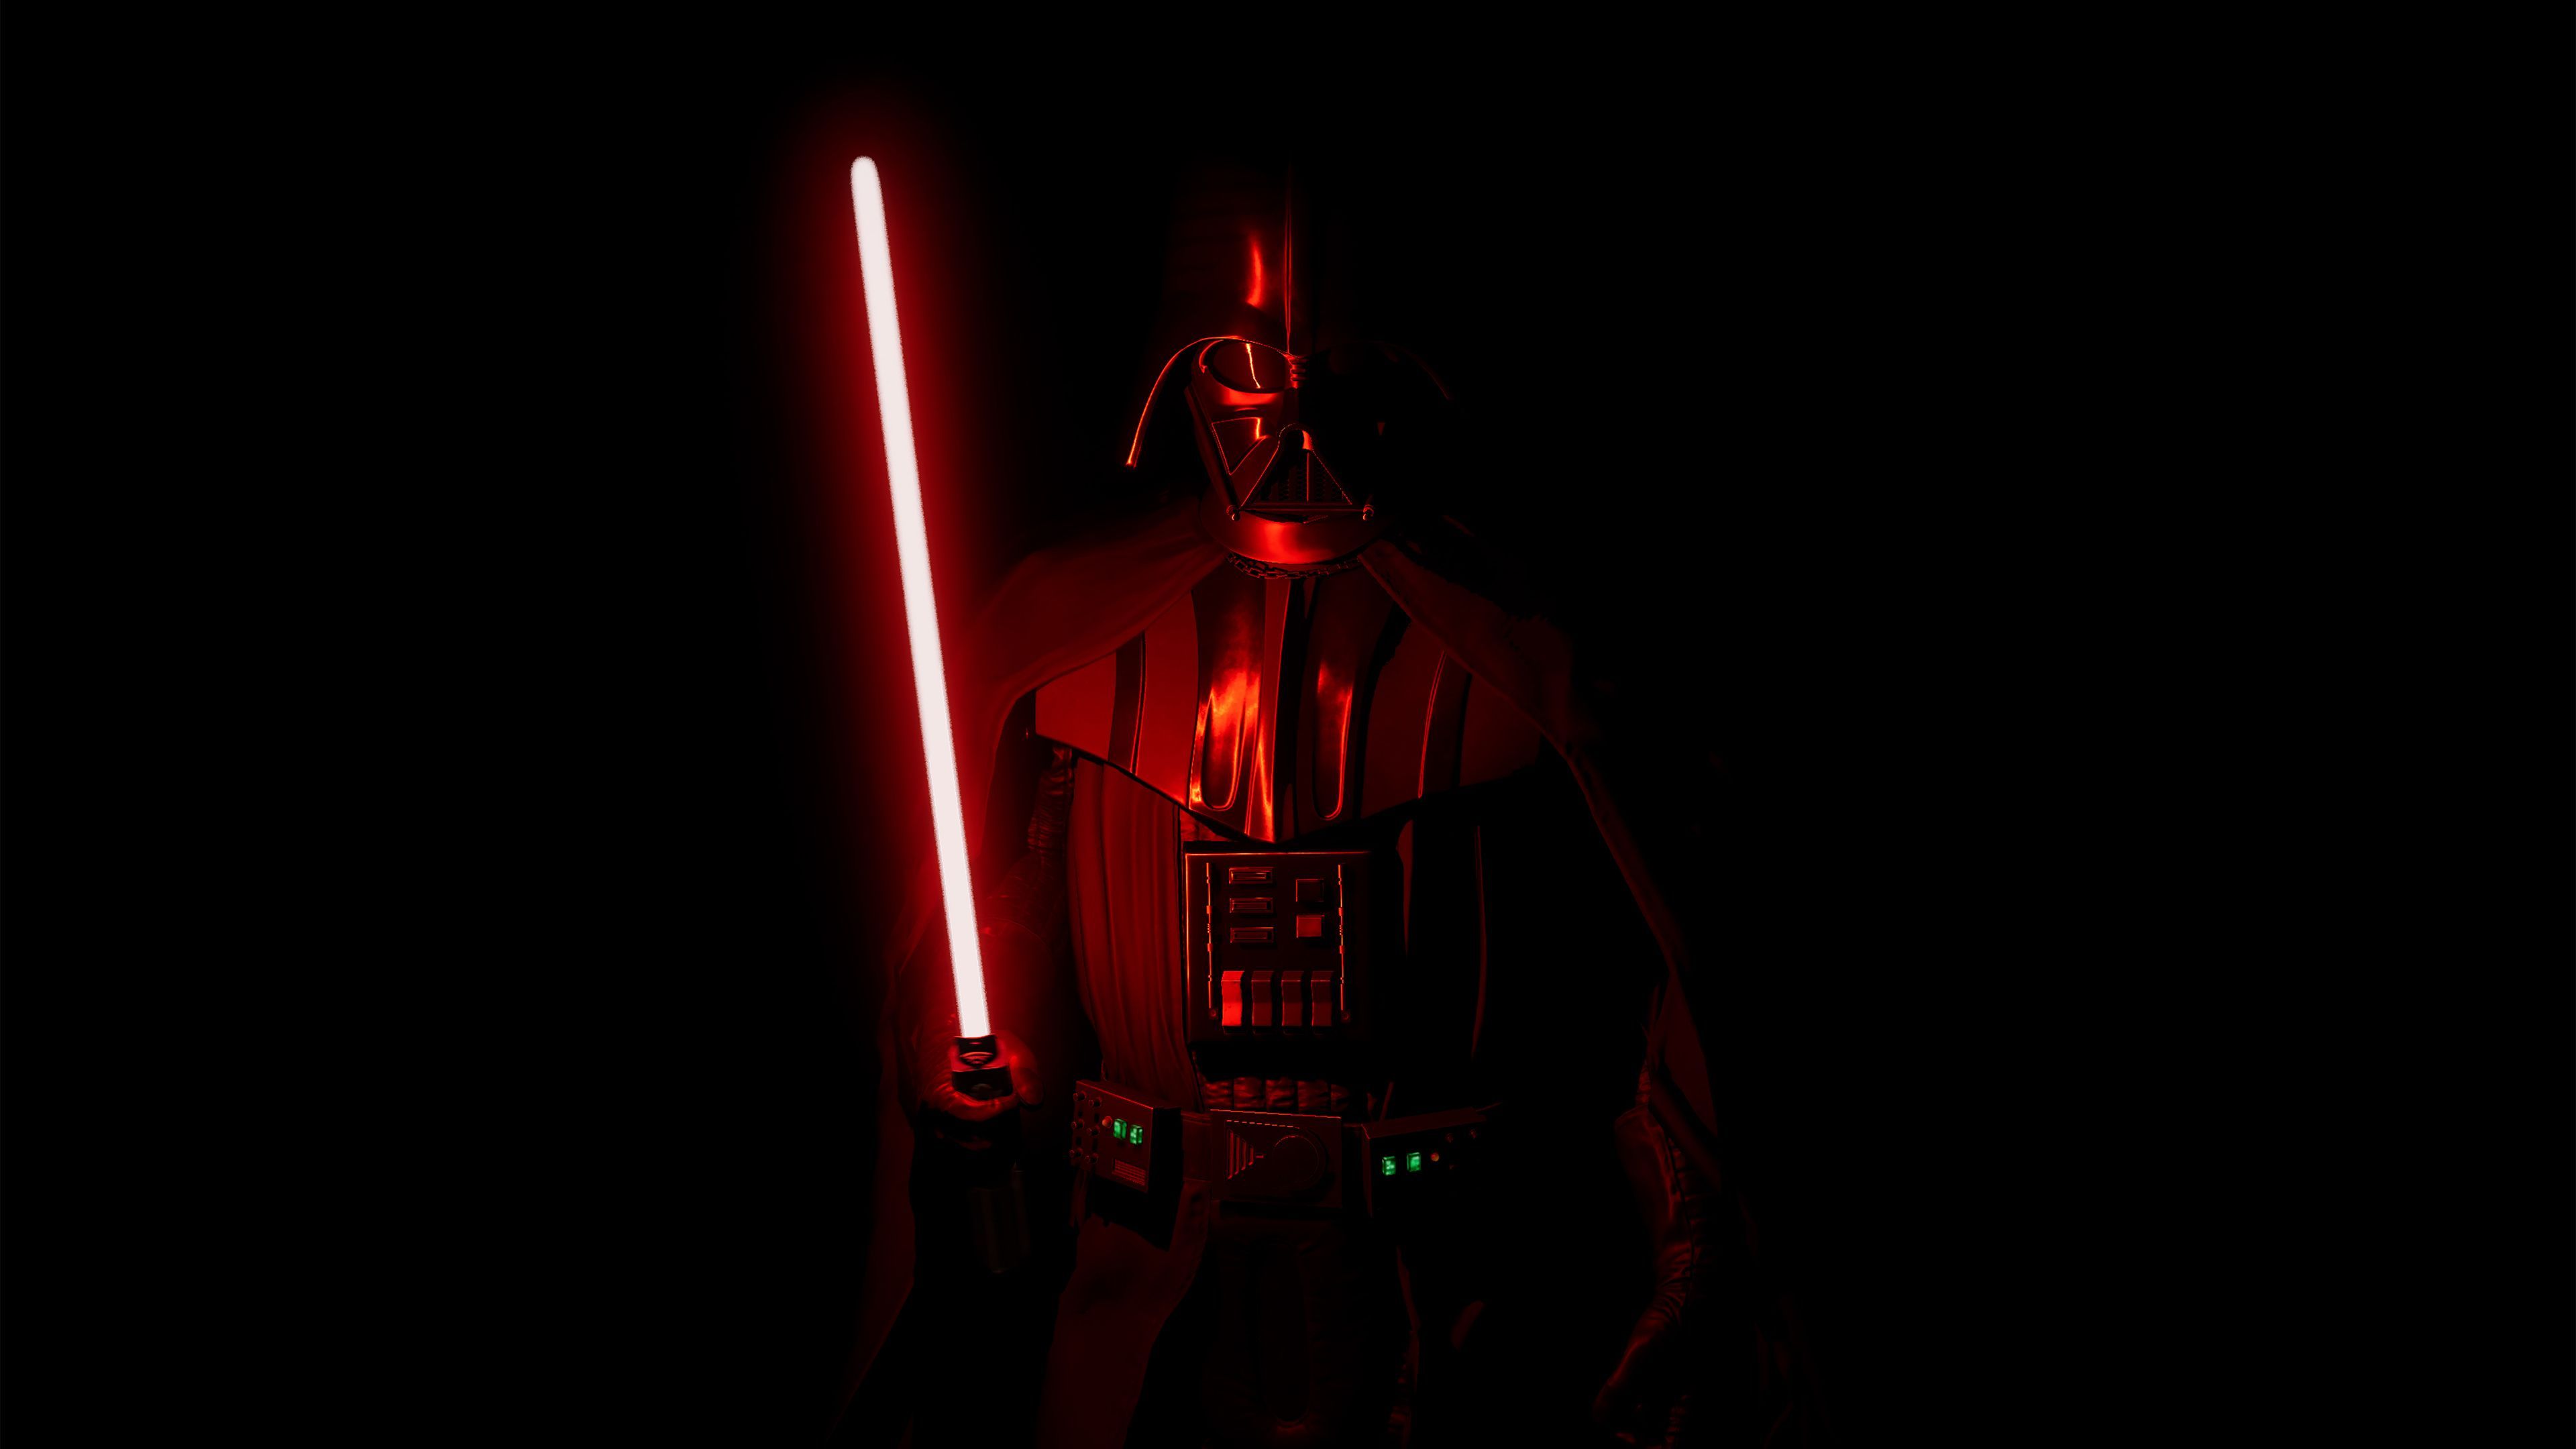 Darth Vader 4k 2019 star wars .com